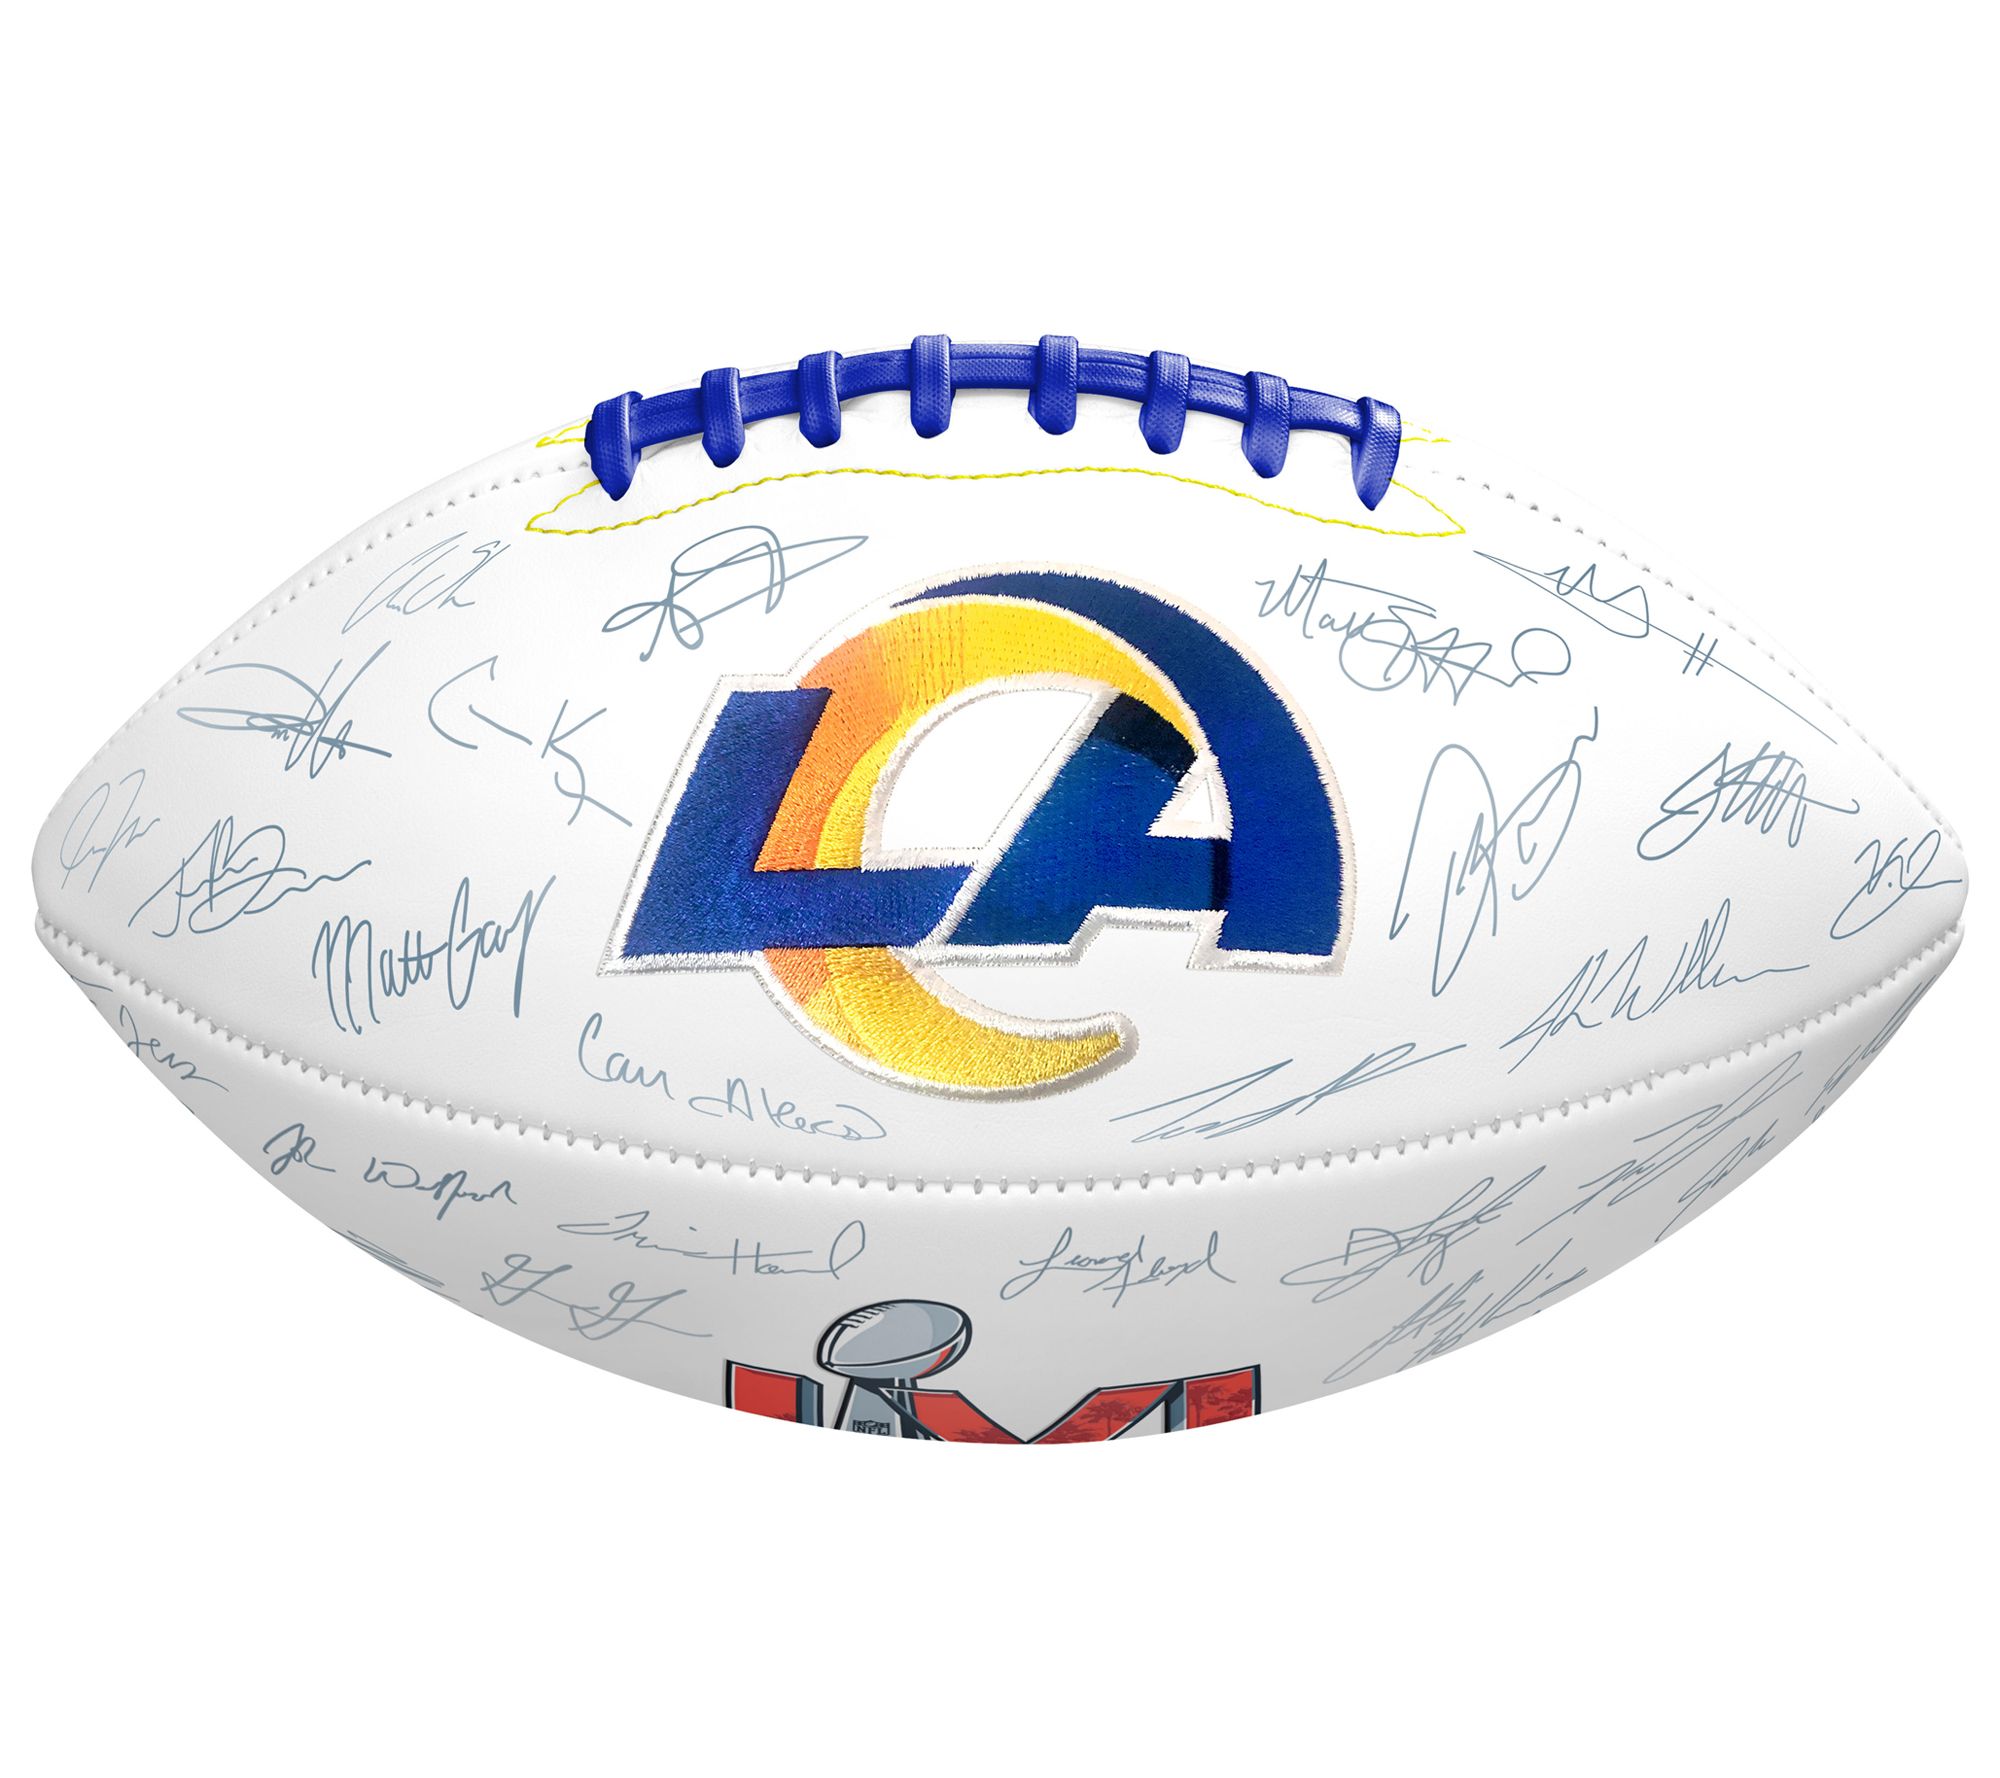 OTBB Super Bowl LVI Champions Rams Bowling Ball